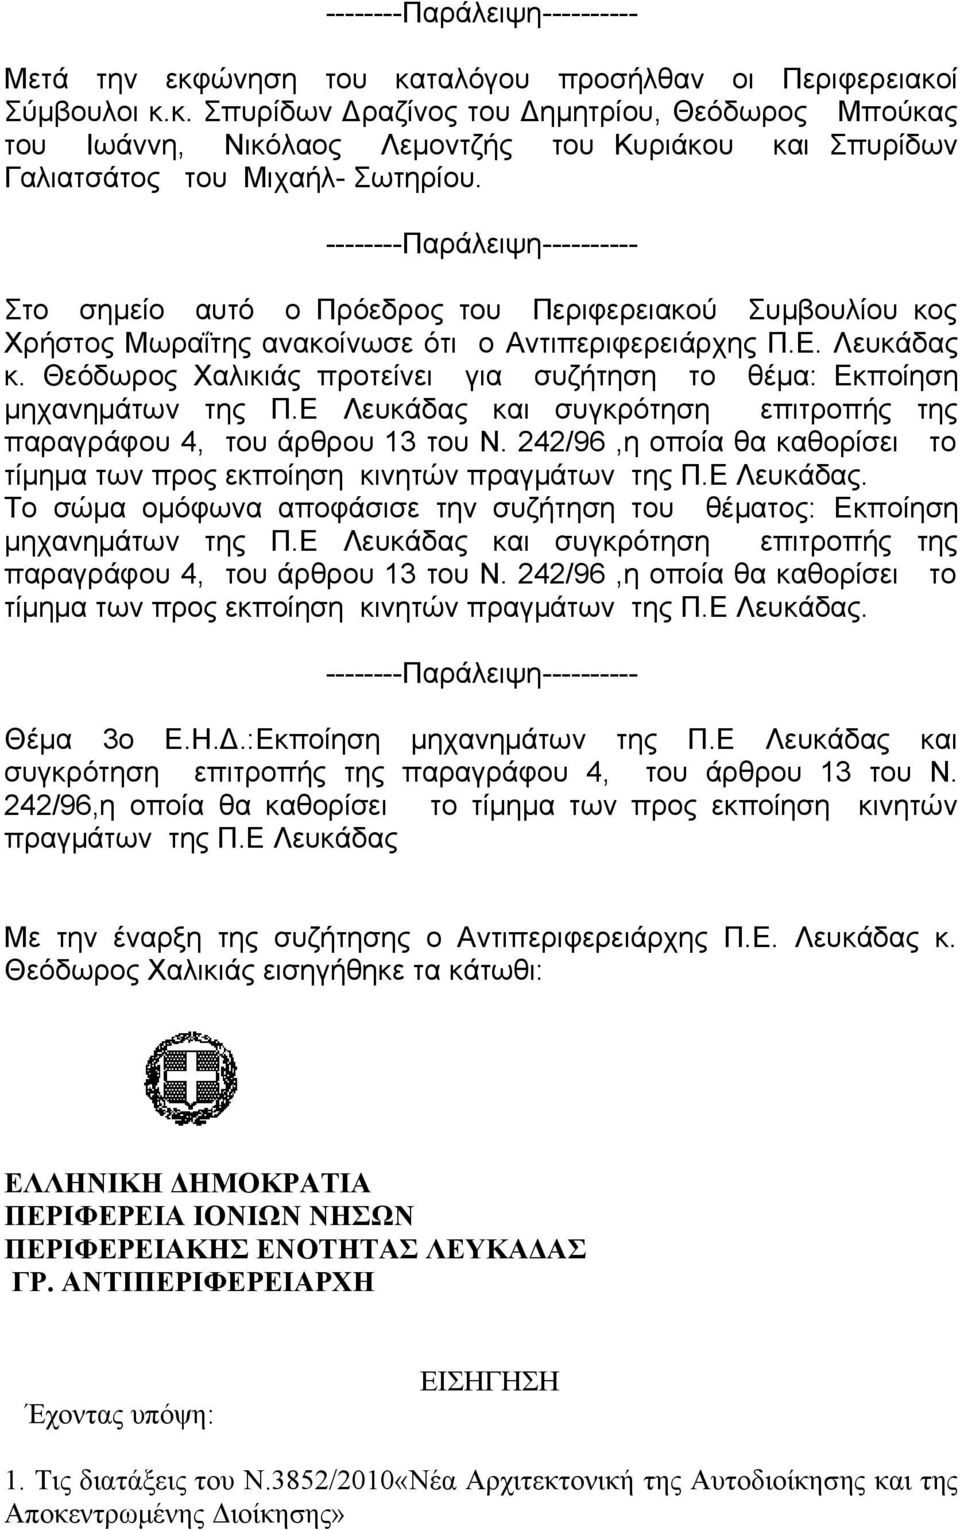 Θεόδωρος Χαλικιάς προτείνει για συζήτηση το θέμα: Εκποίηση μηχανημάτων της Π.Ε Λευκάδας και συγκρότηση επιτροπής της παραγράφου 4, του άρθρου 13 του Ν.